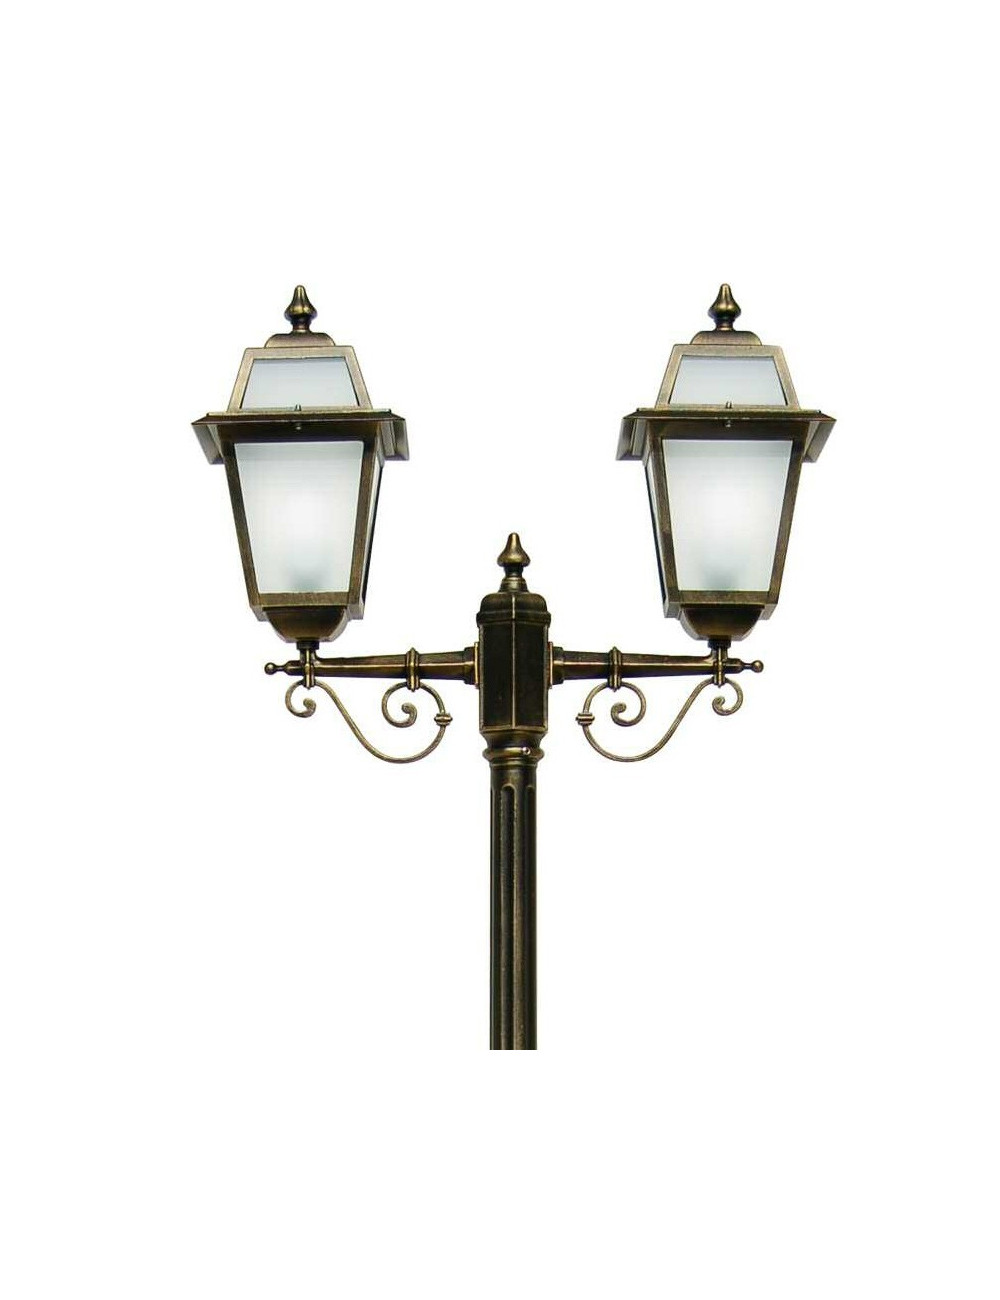 ARTEMIDE Palo Lampione Lanterna Classica Illuminazione Esterno Giardino